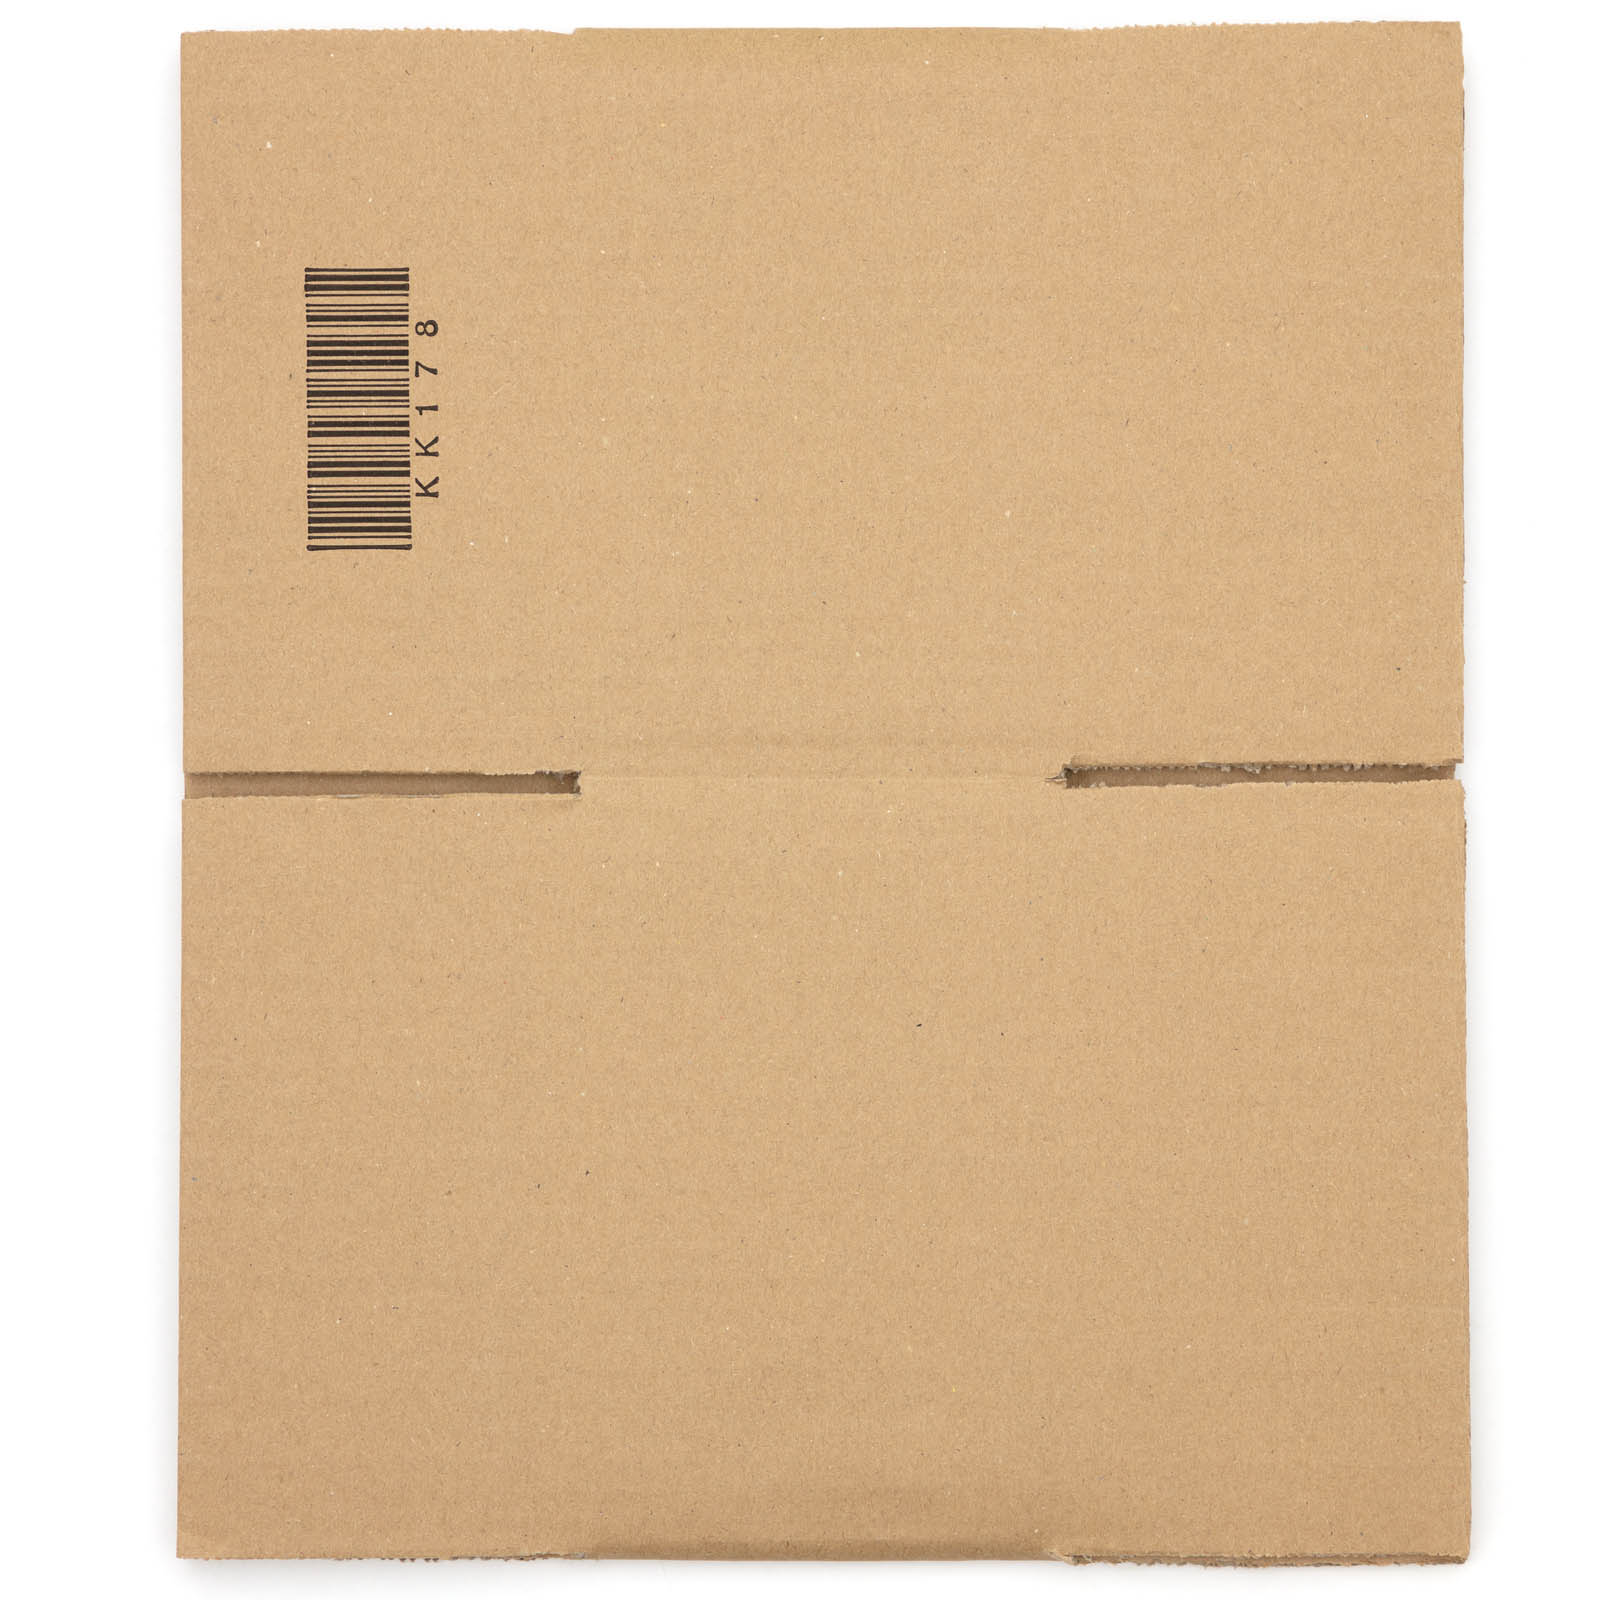 Kartons Faltkartons Versandkartons Versandschachtel Versandverpackung 2-wellig